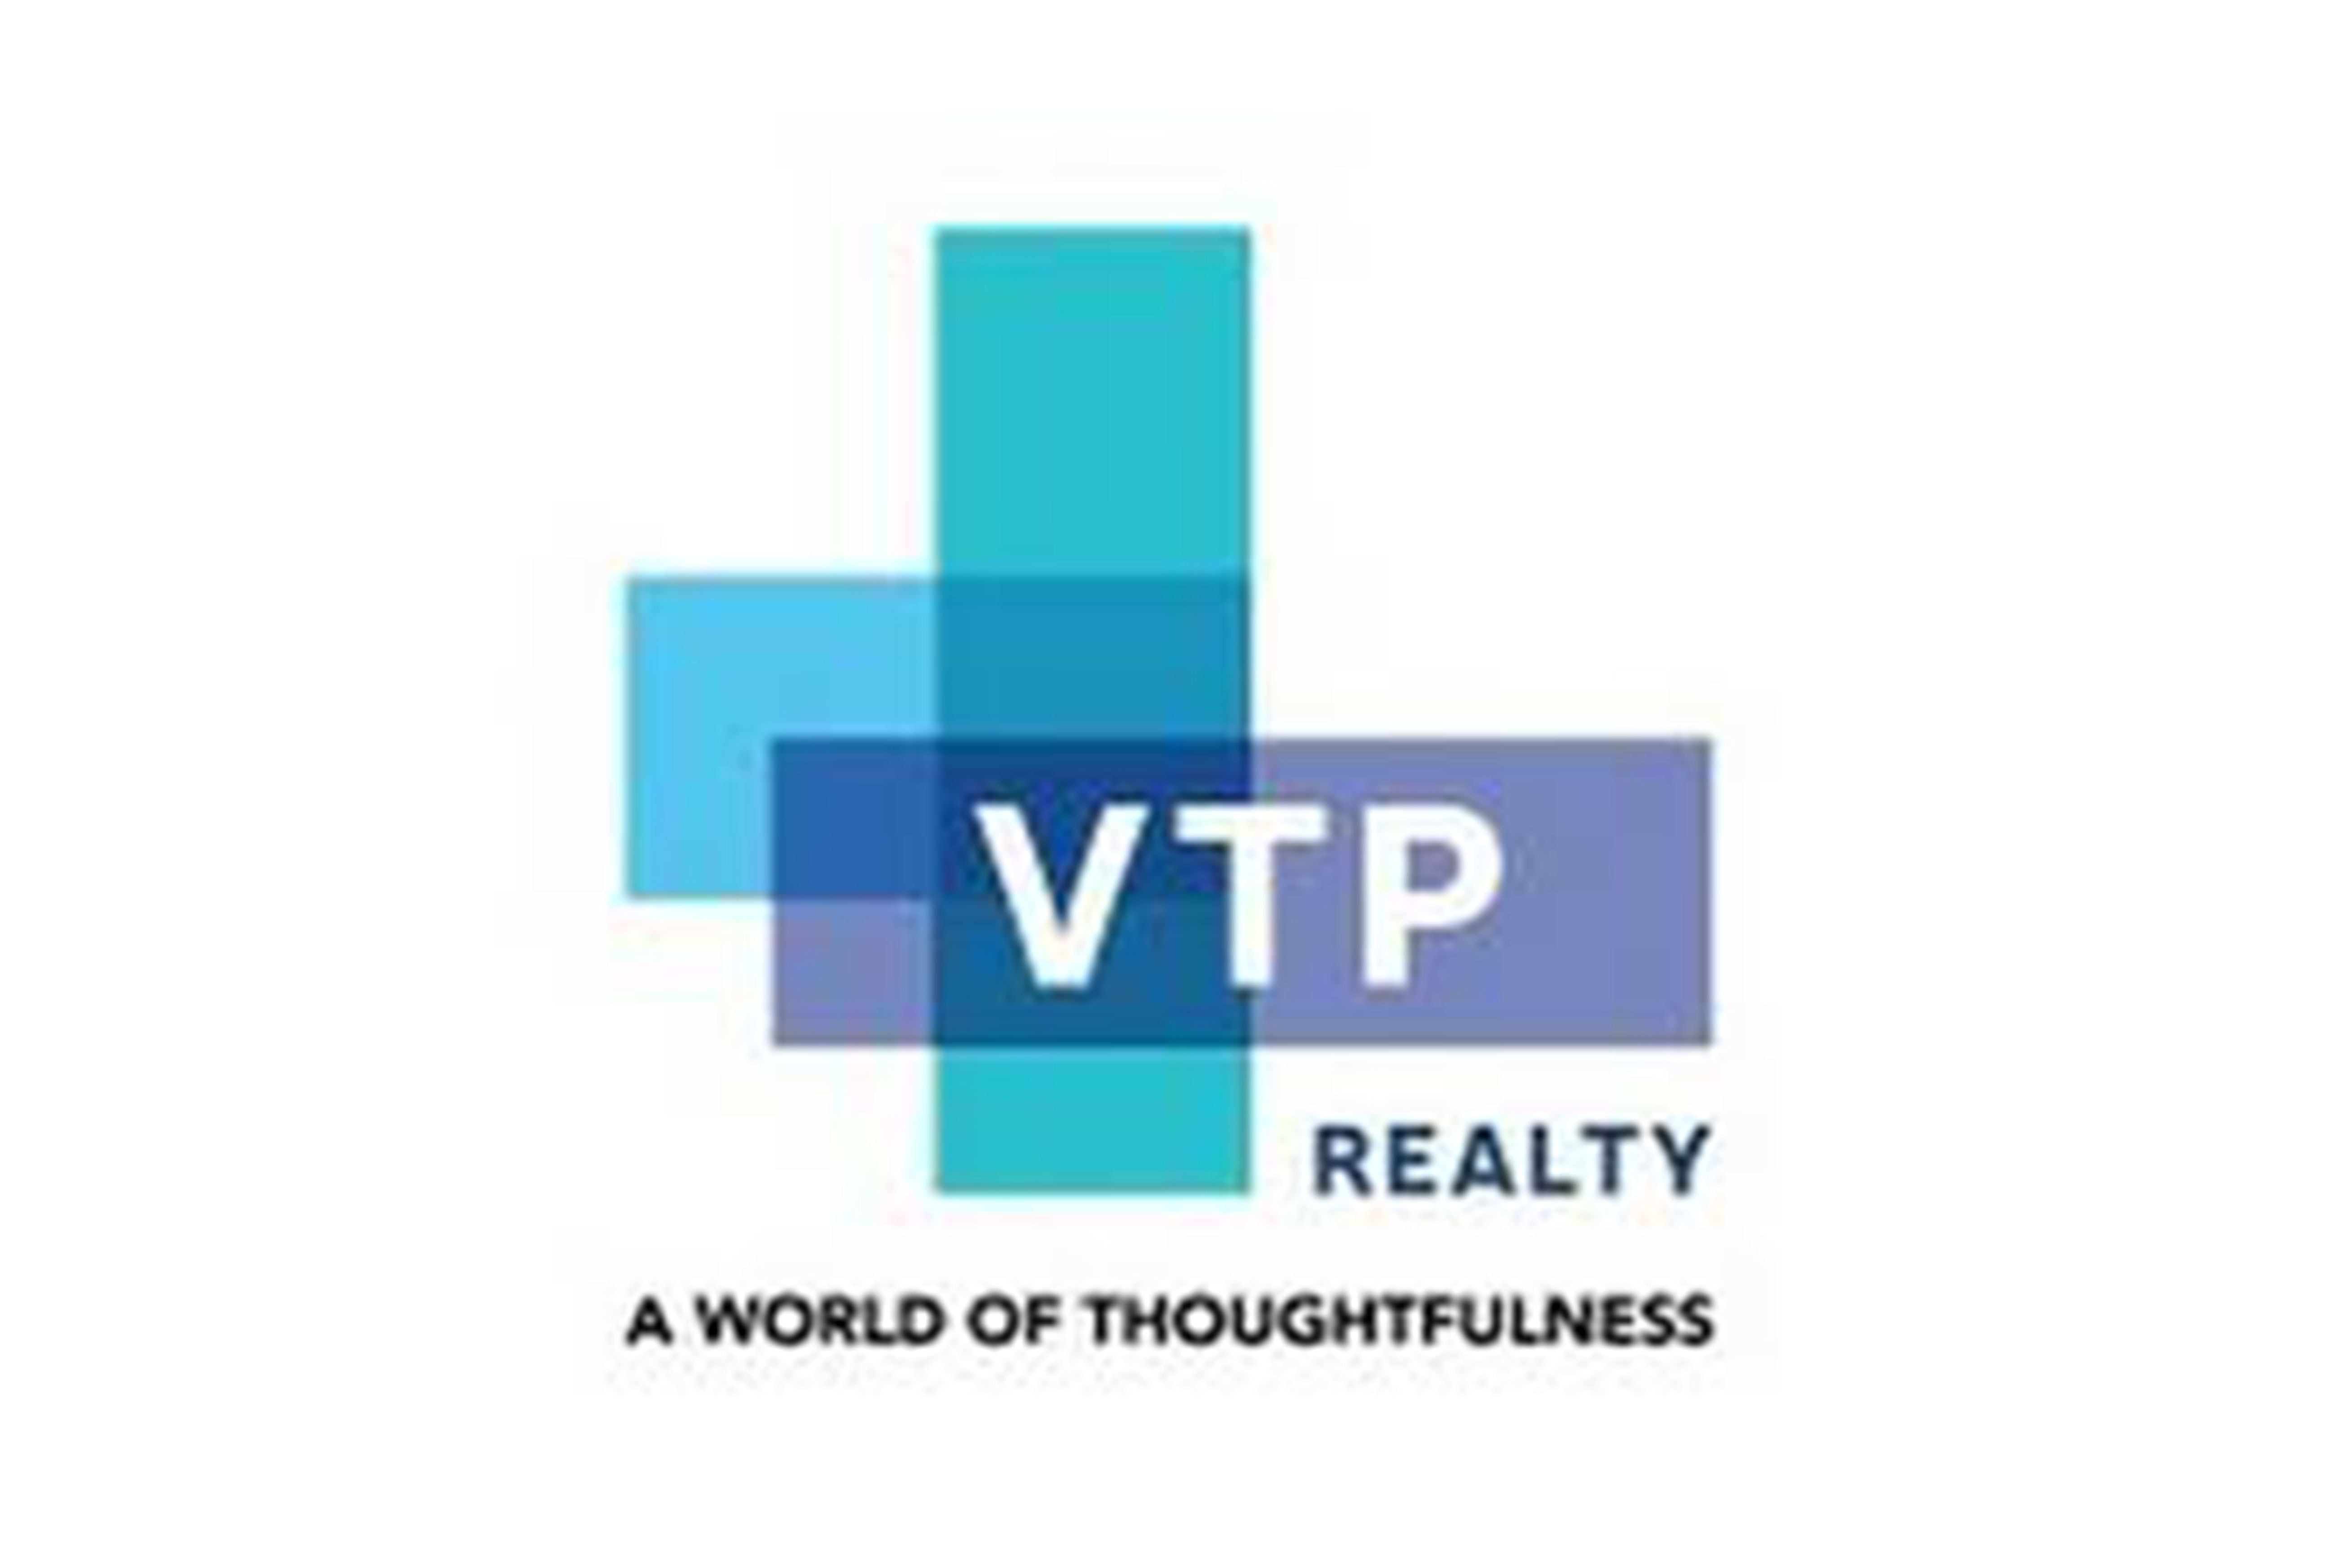 VTP reality